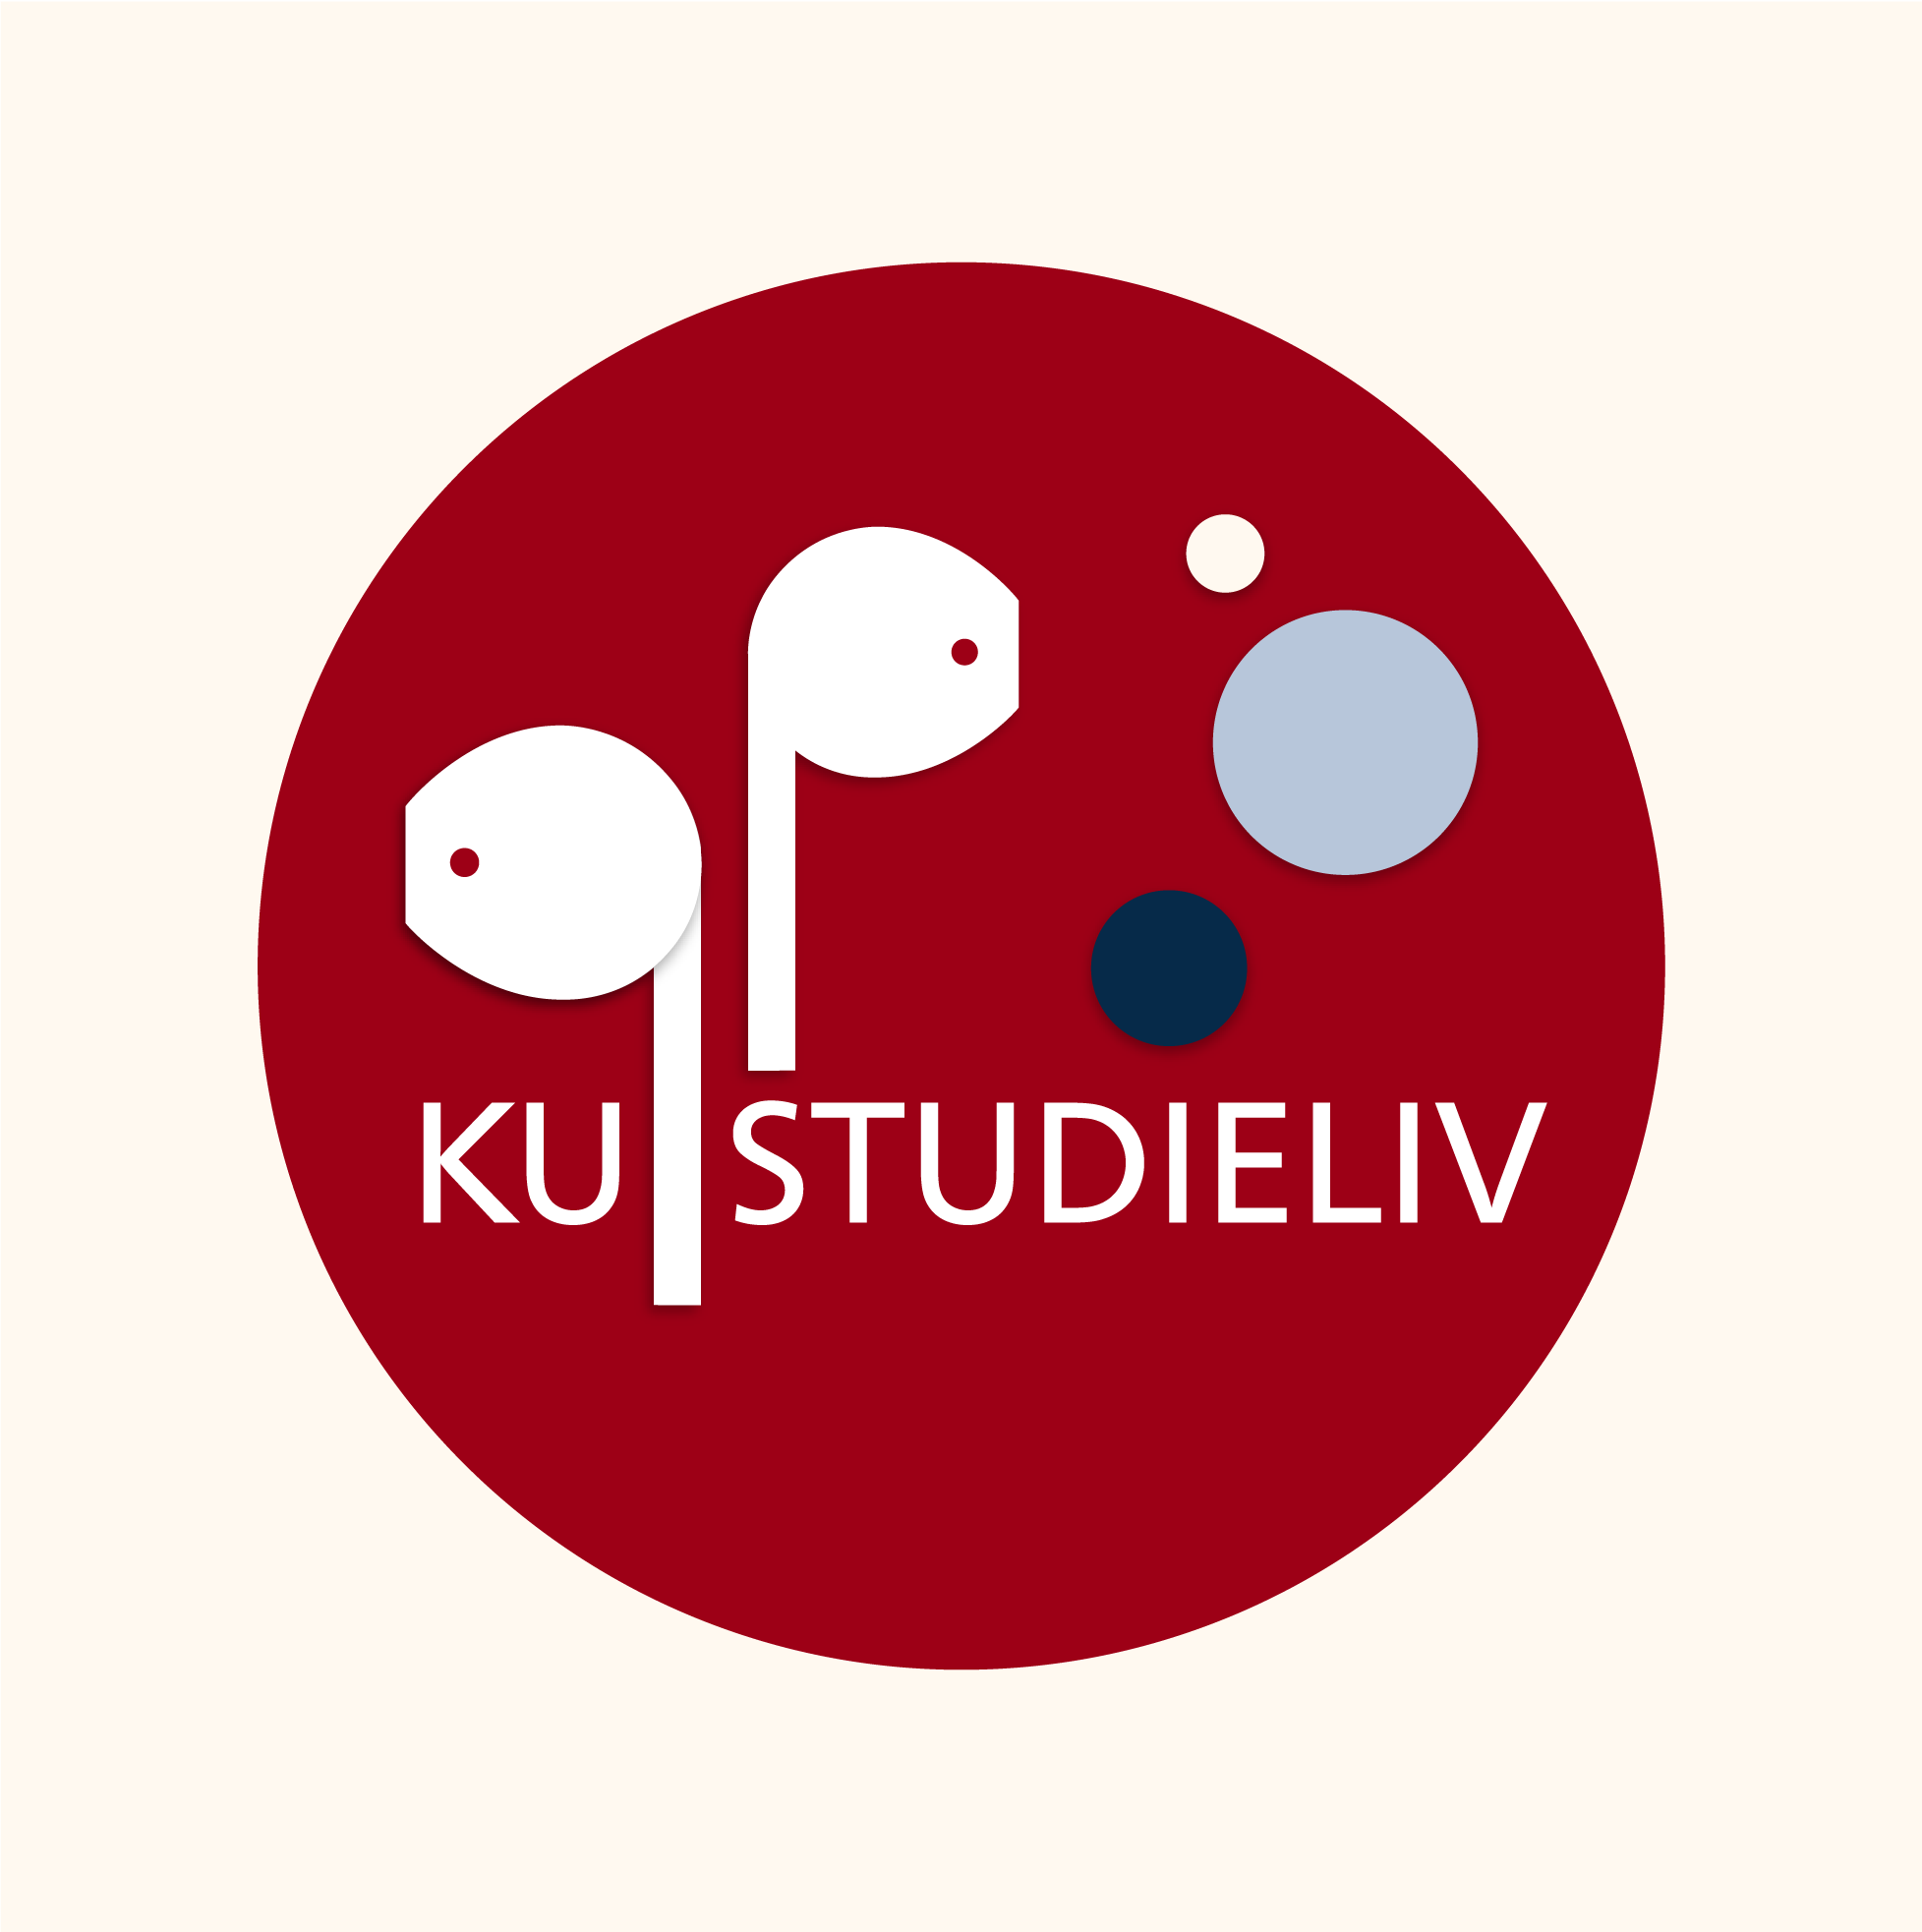 KU Studielivs podcast logo